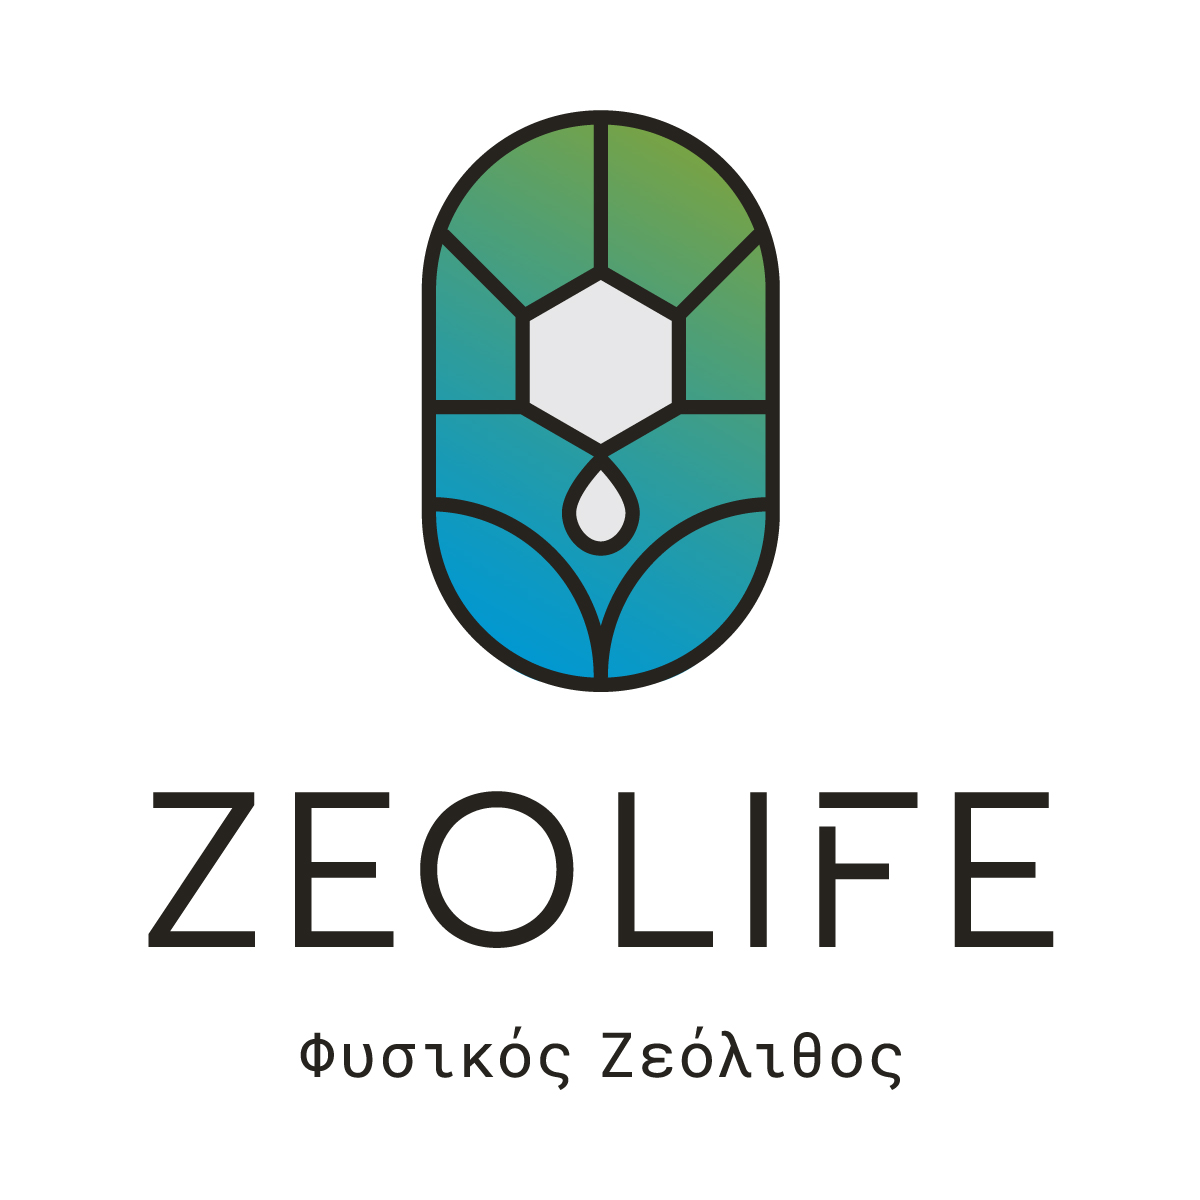 Ελληνικός Ζεόλιθος, προϊόντα ζεόλιθου και βιομηχανικά ορυκτά | Zeolife.gr